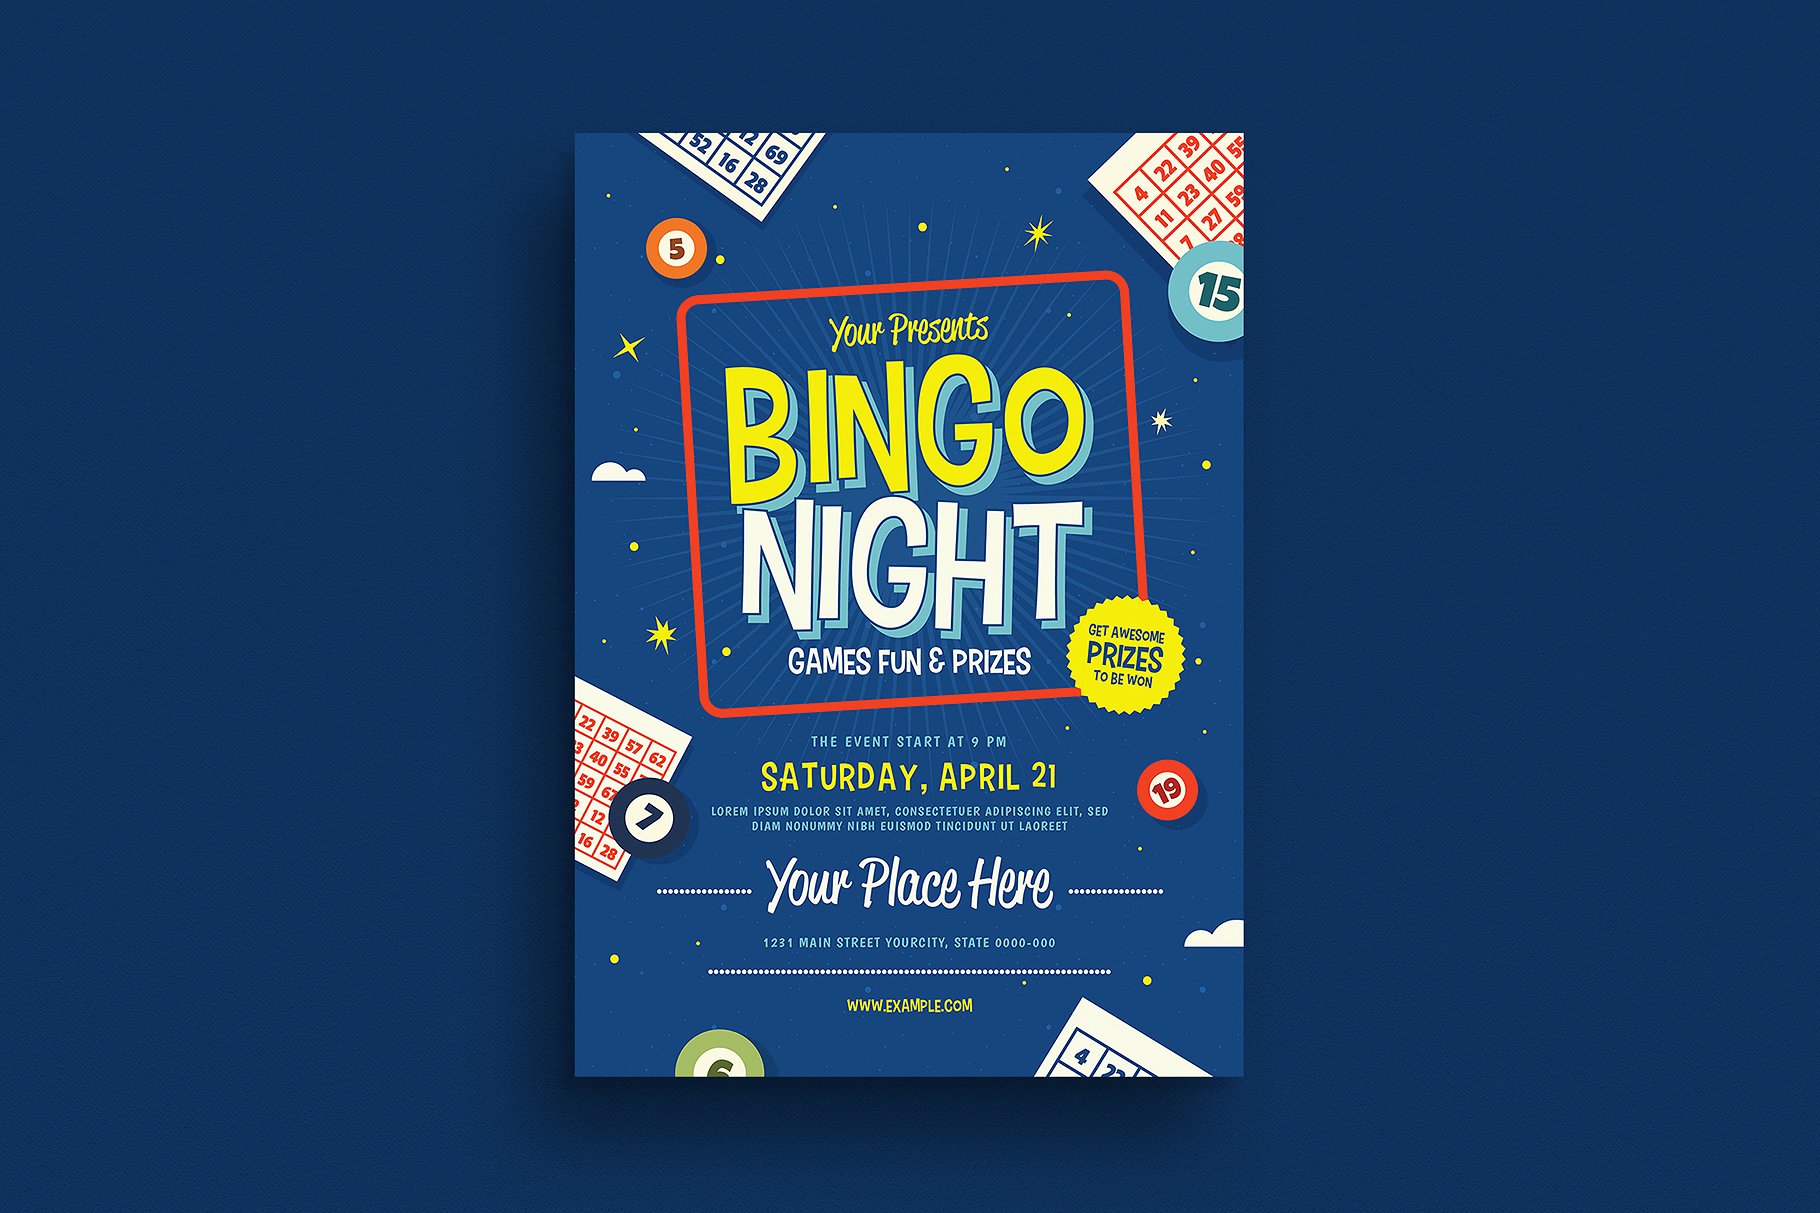 宾果之夜活动传单设计 Bingo Night Event F